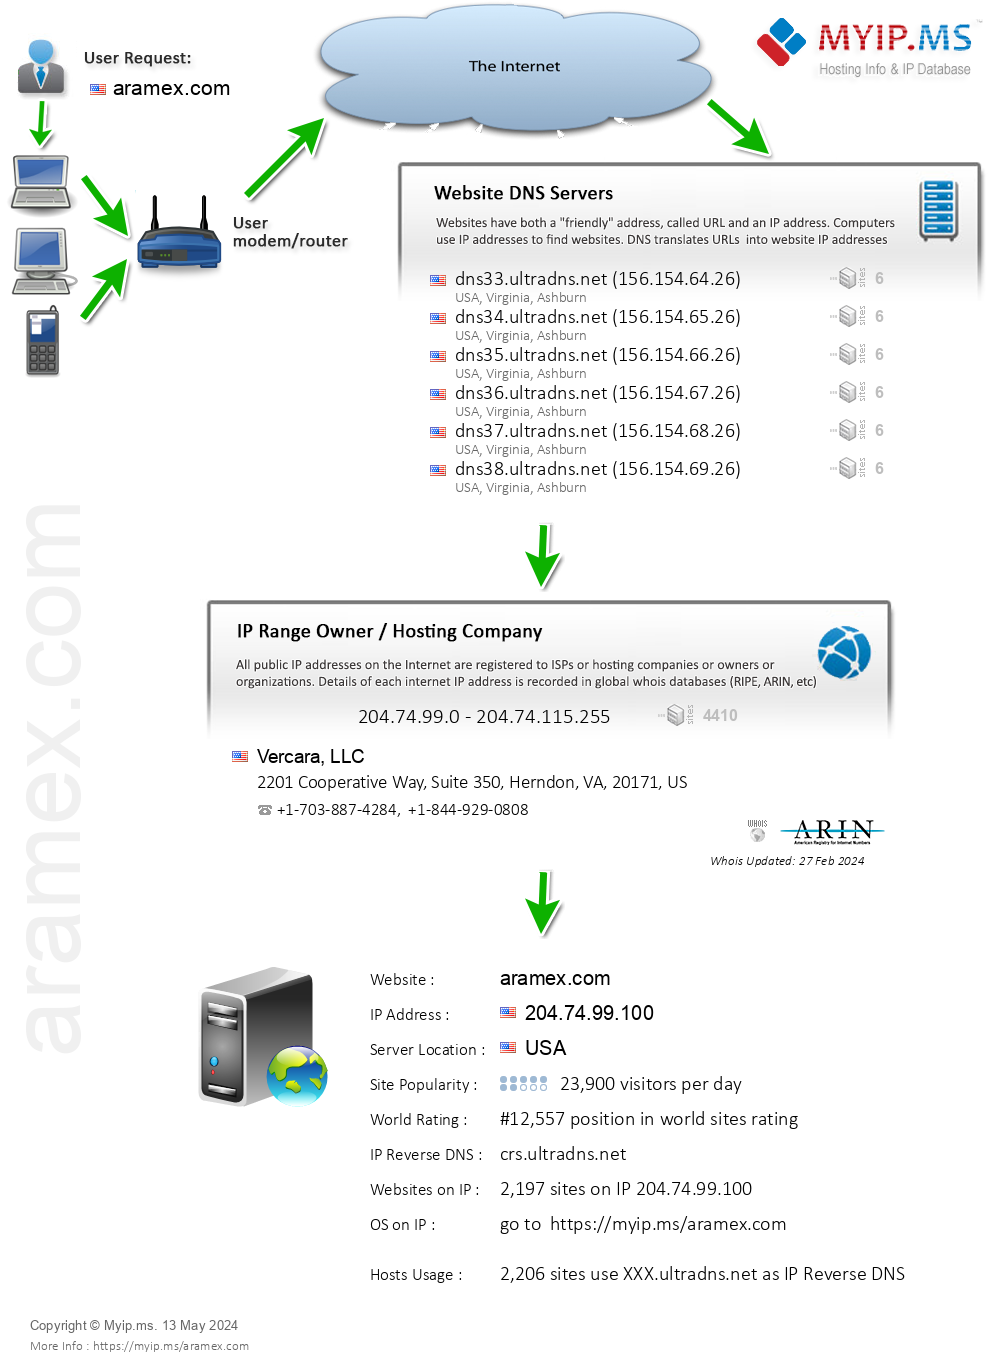 Aramex.com - Website Hosting Visual IP Diagram